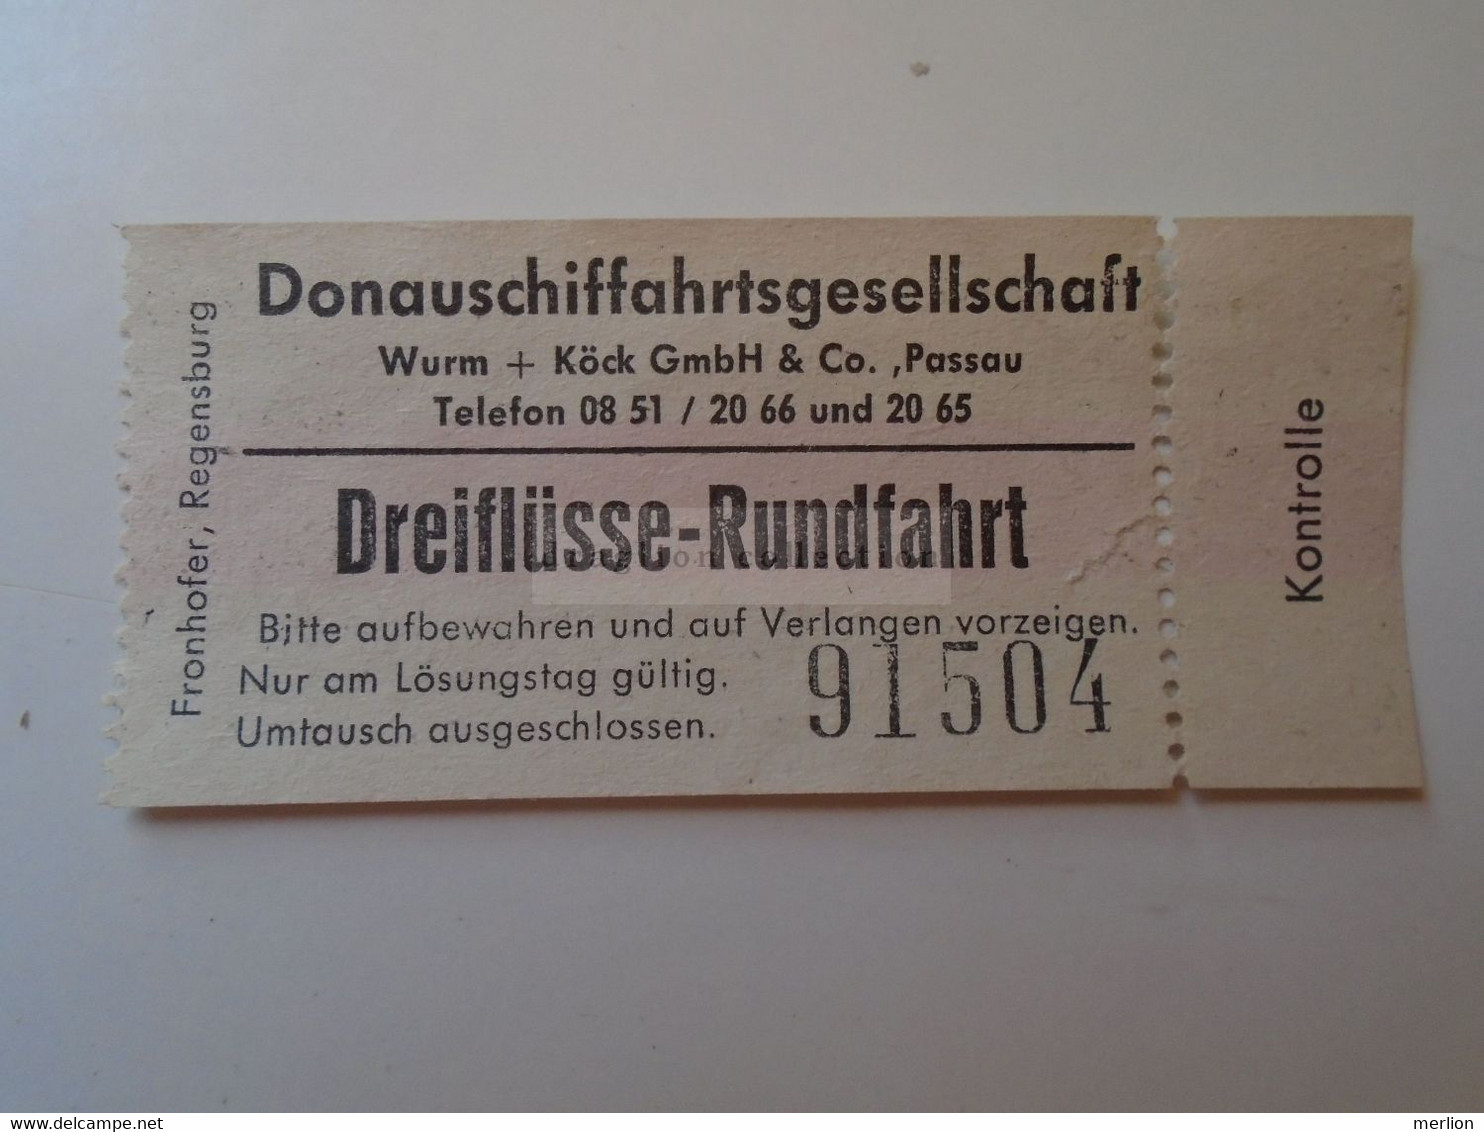 DT007 Donauschiffahrtgesellschaft -  Dreiflüsse-Rundfahrt - Passau  Ticket - Ca 1960-80 - Europa